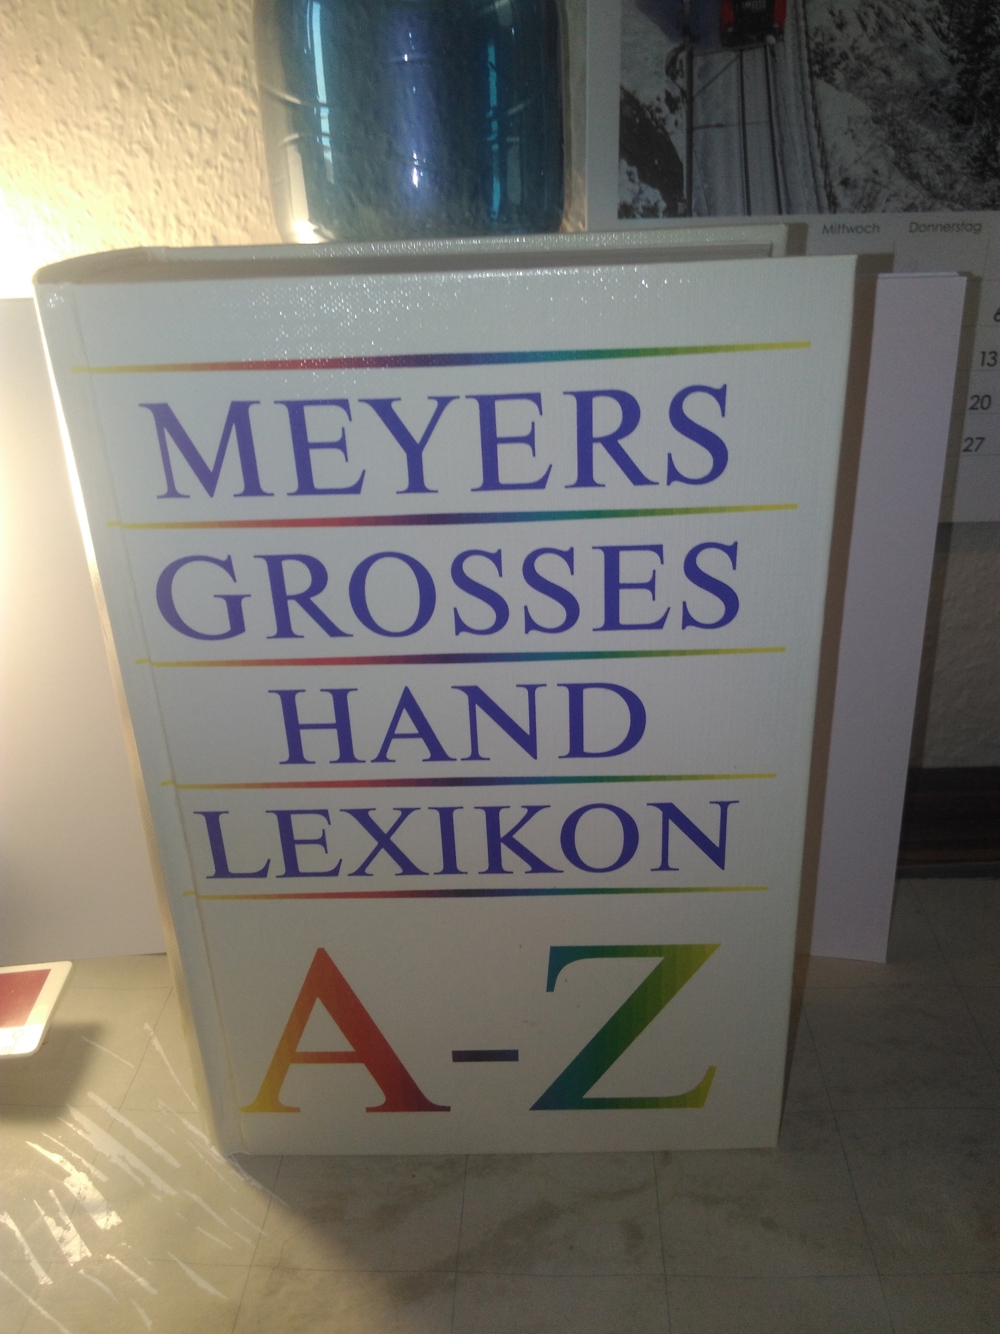 Meyers Grosses Hand Lexikon - 1989